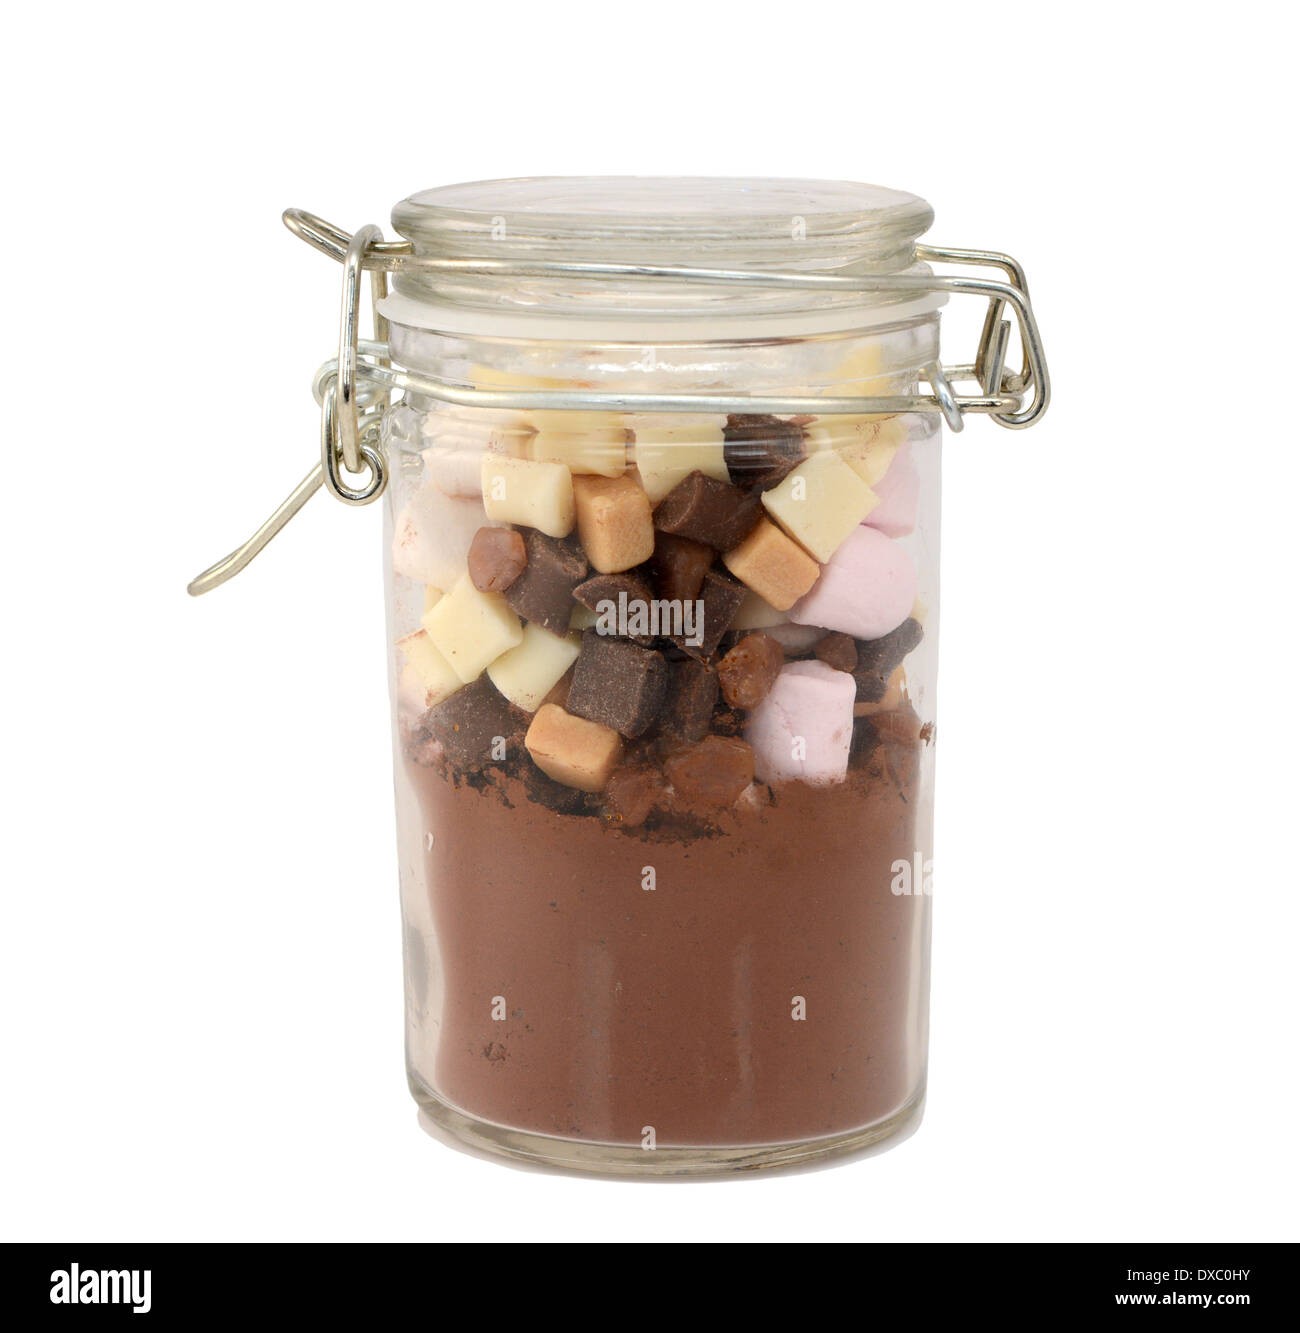 Zutaten für heiße Schokolade - Kakao, Marshmallows, fudge Stücke - in einem Glas isoliert auf weißem Hintergrund Stockfoto